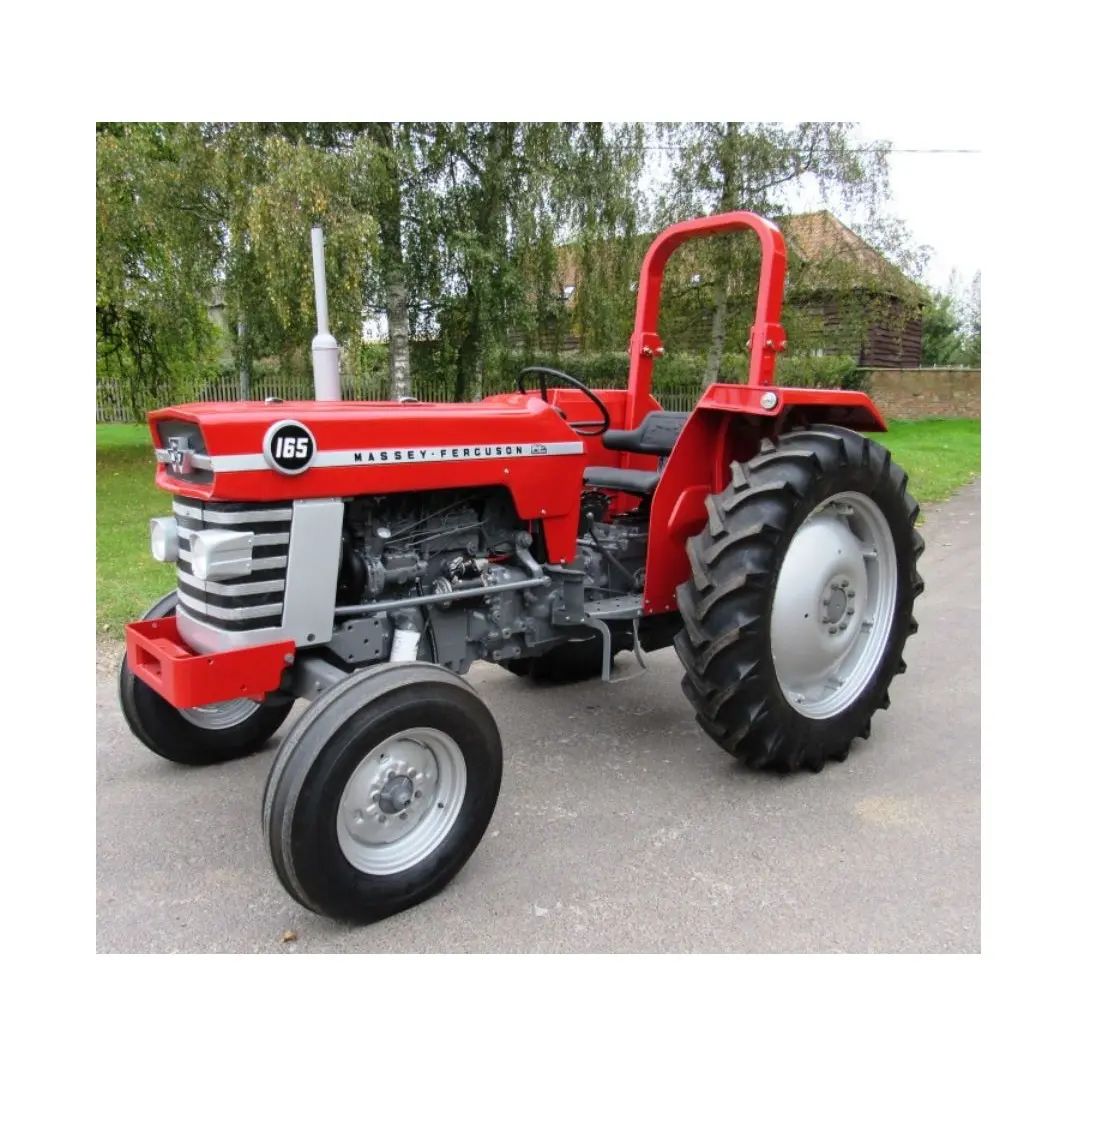 Satılık yeni ve kullanılmış temiz Massey Ferguson traktörleri MF-385 4WD 85hp/satılık Massey Ferguson traktörleri